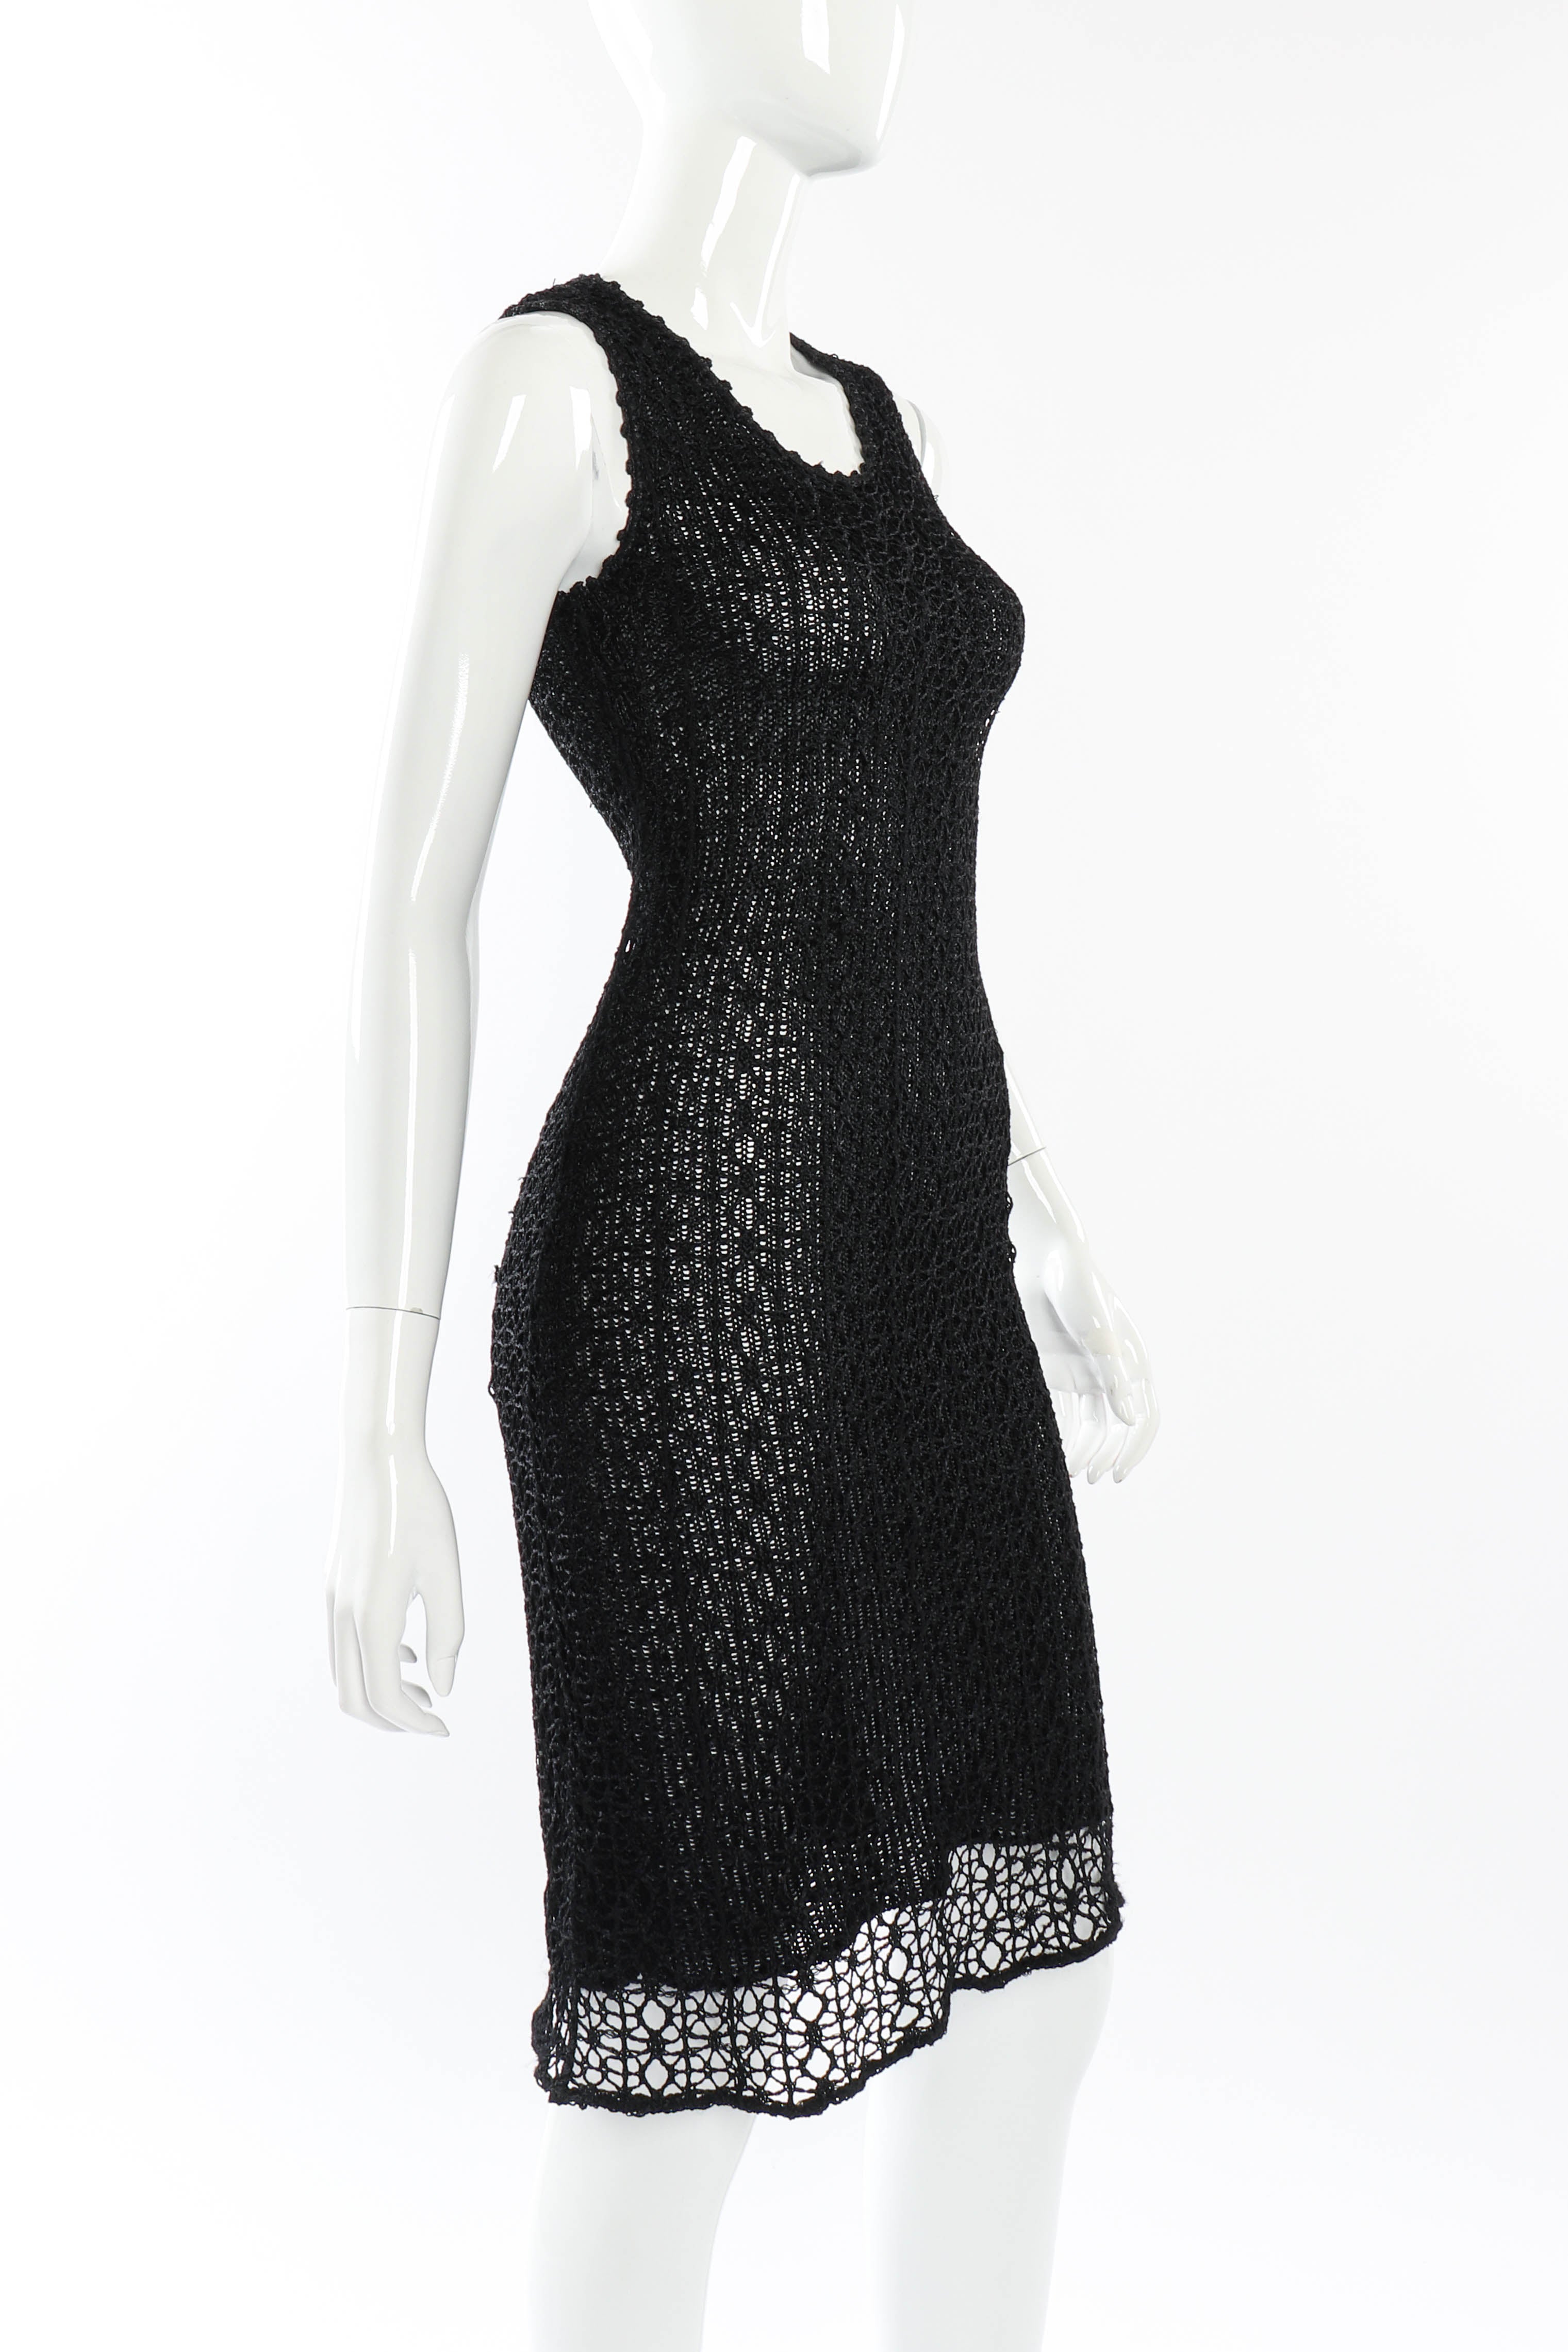 Vintage Christian Lacroix Open Knit Crochet Dress side on mannequin @recessla